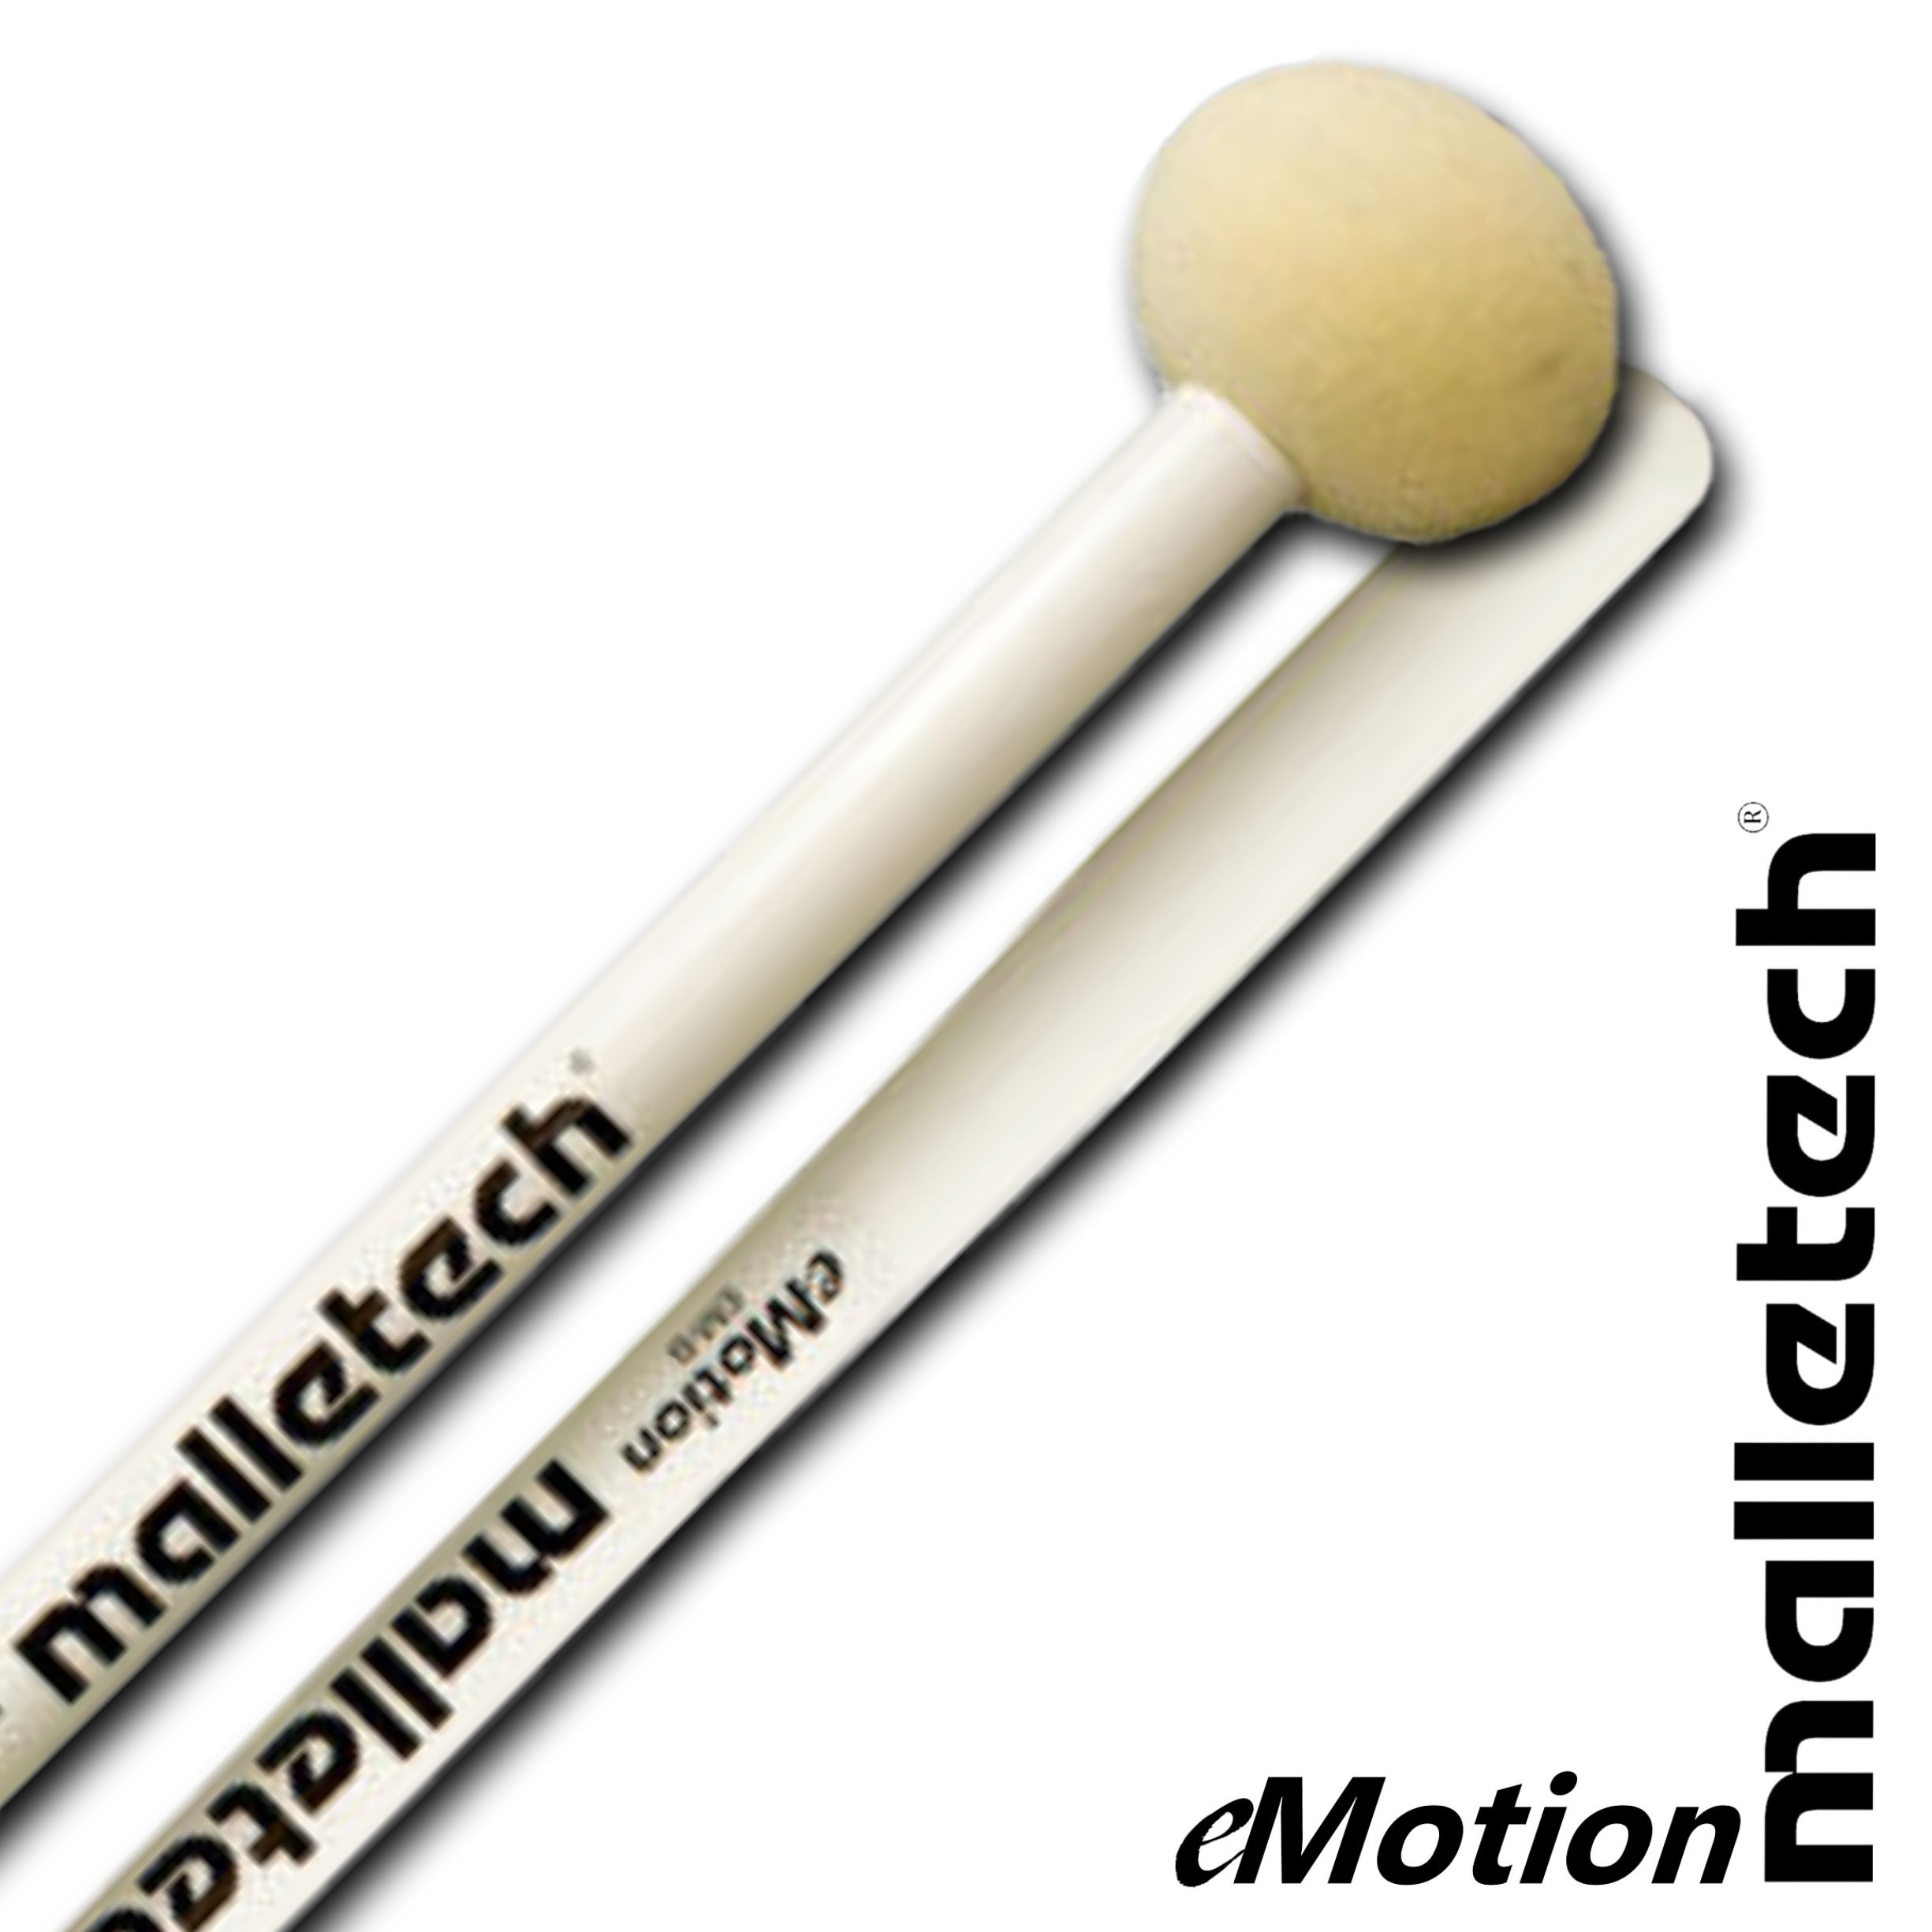 Malletech EM-B5 eMotion Hard Felt Bass Drum Mallets